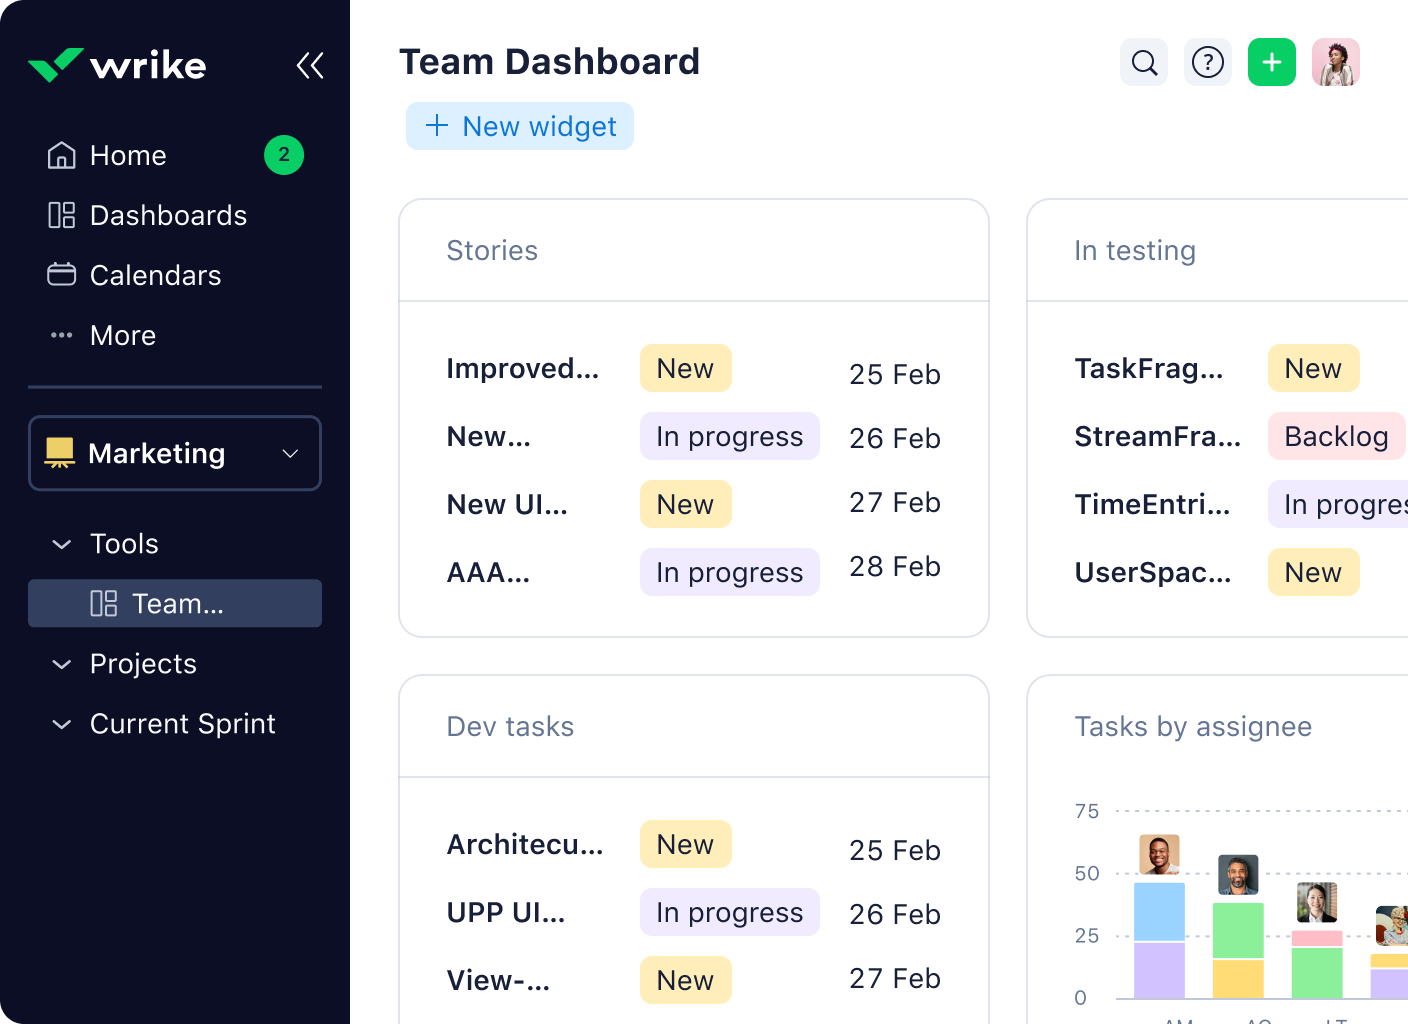 wrike product screenshot of team dashboard